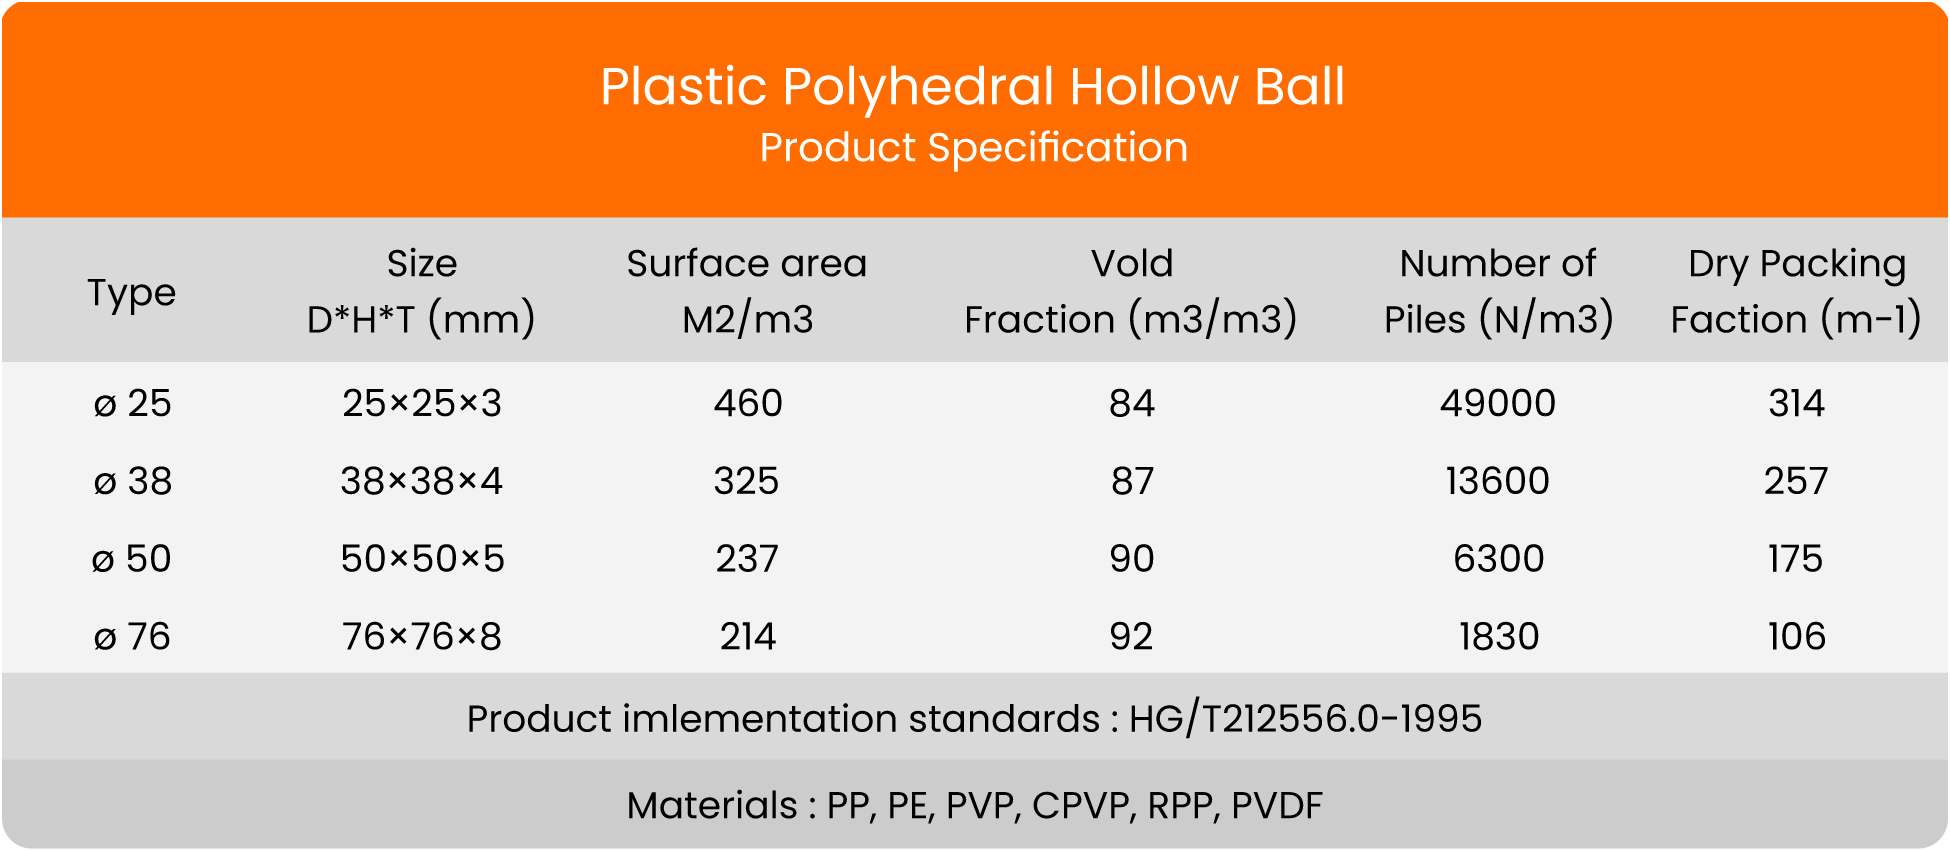 Plastic Polyhedral Hollow Ball Biomedia Spec biomedia